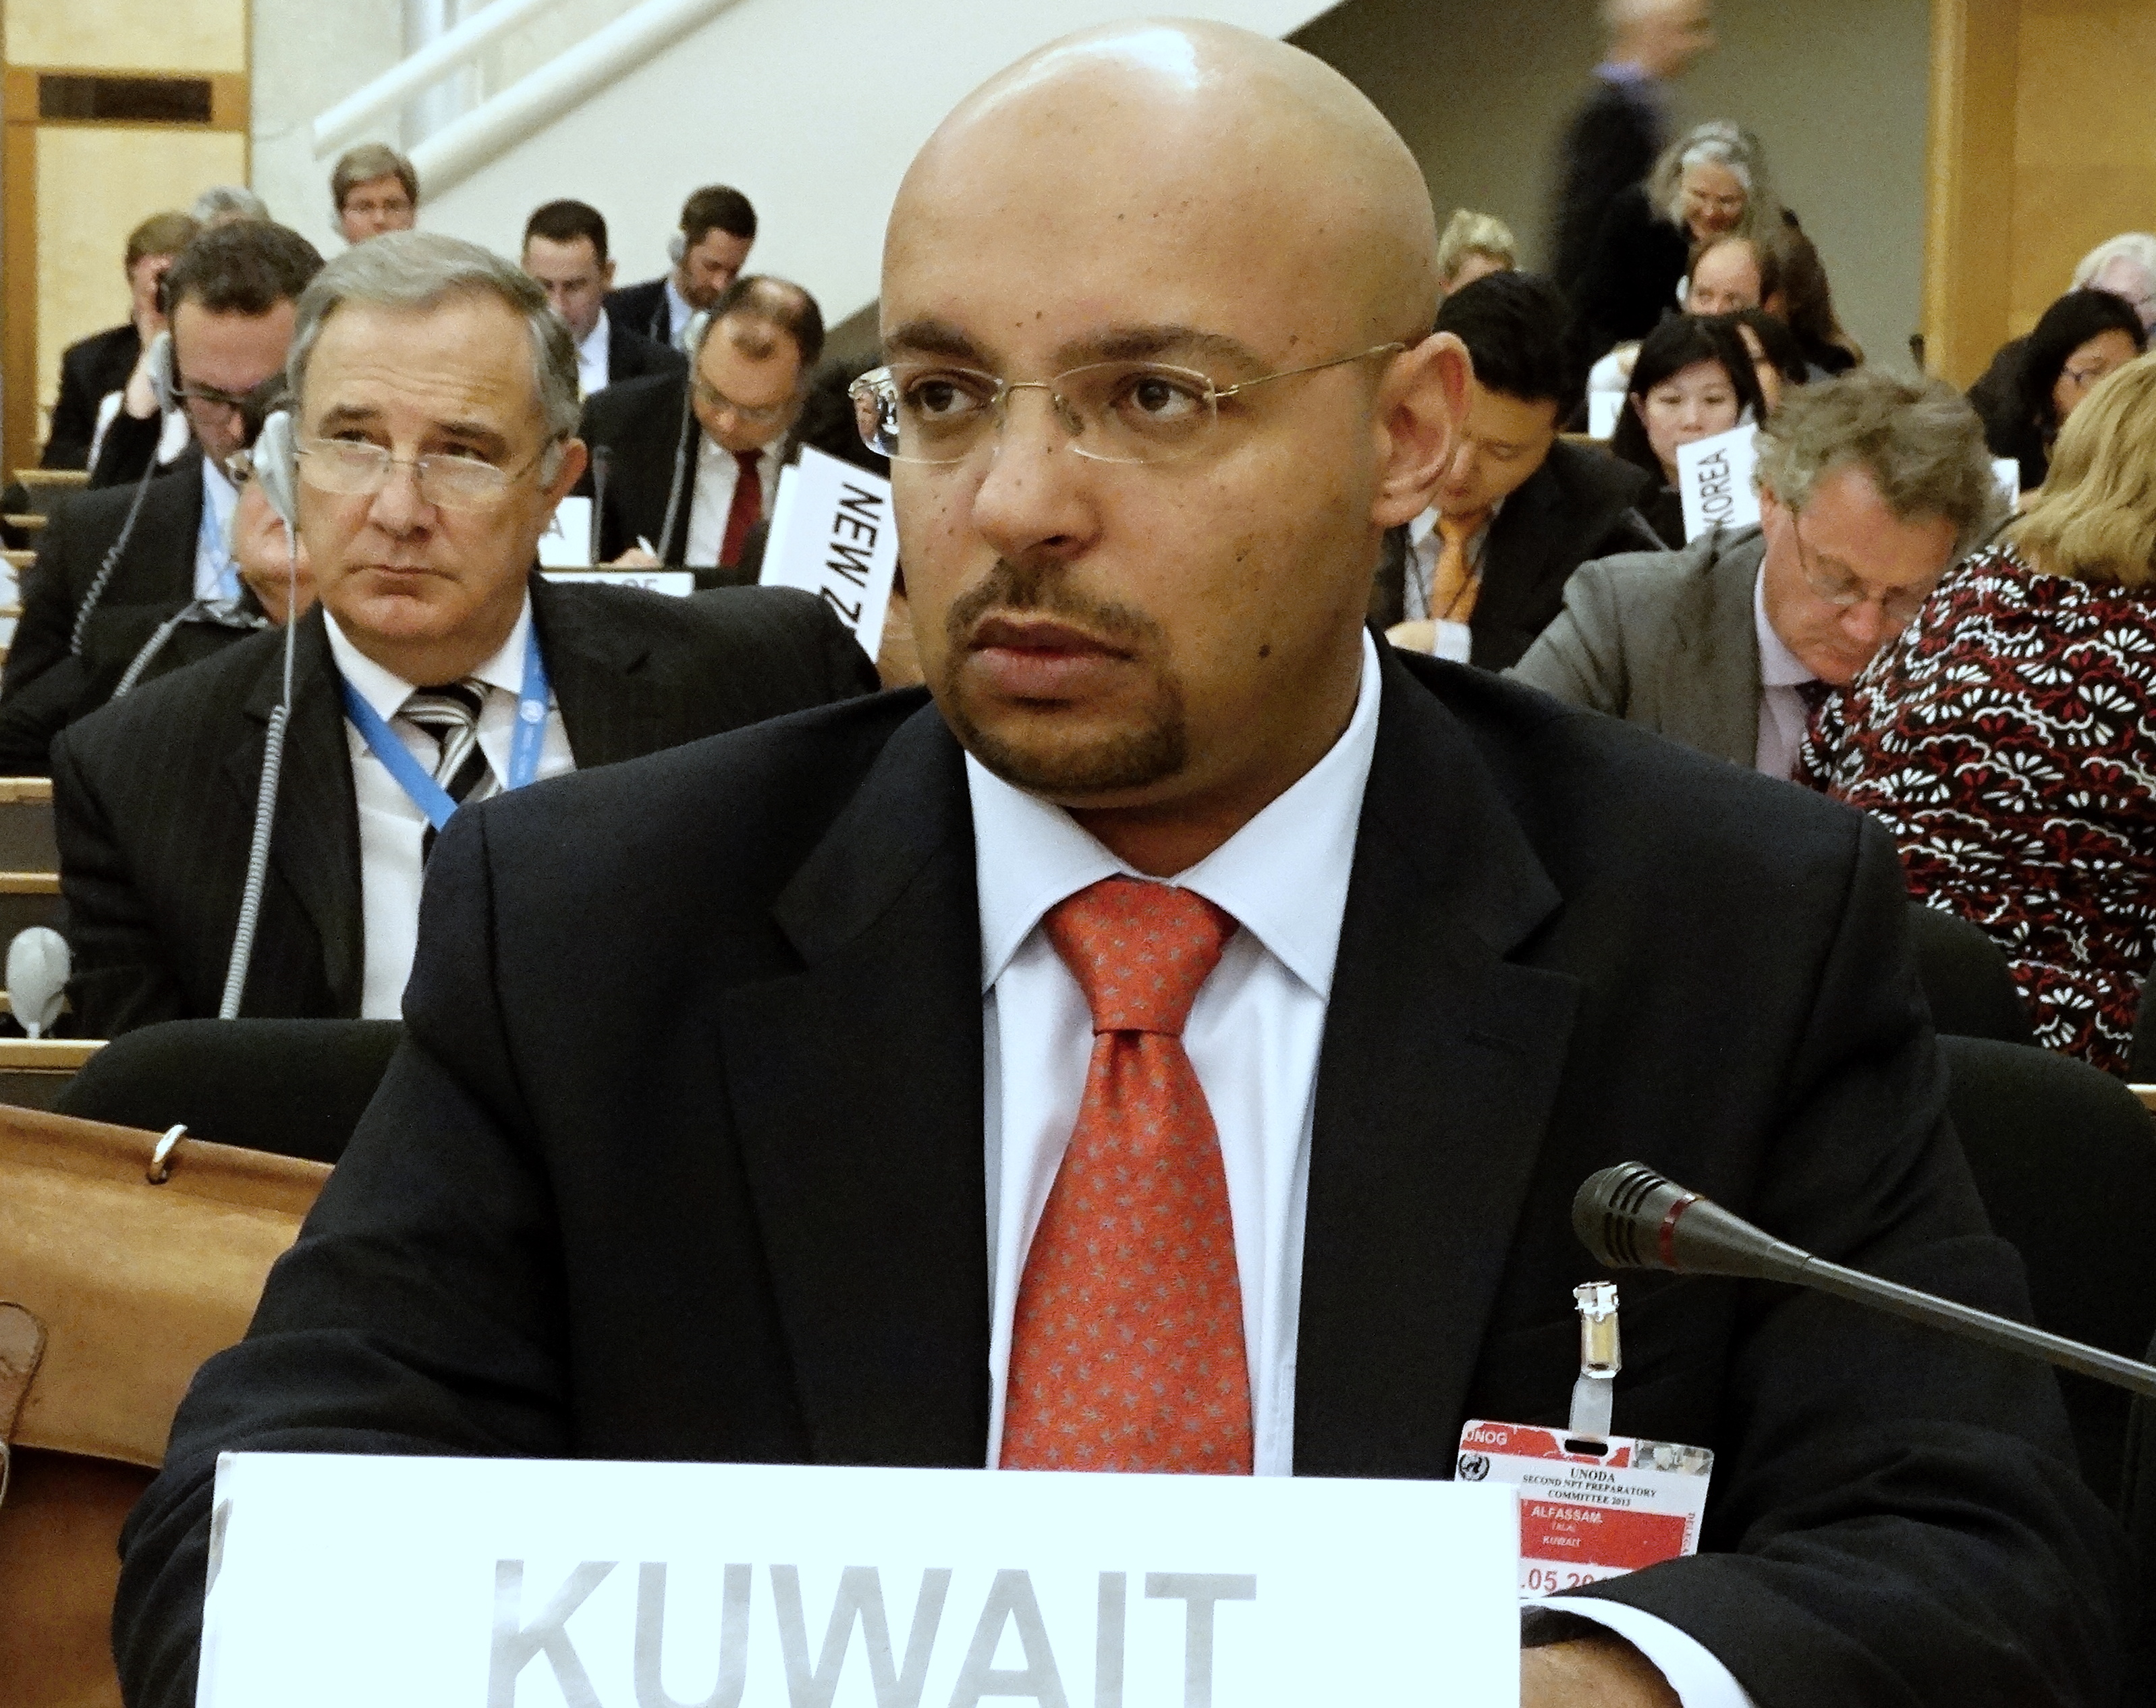 The Kuwaiti diplomat Talal Al-Fusam